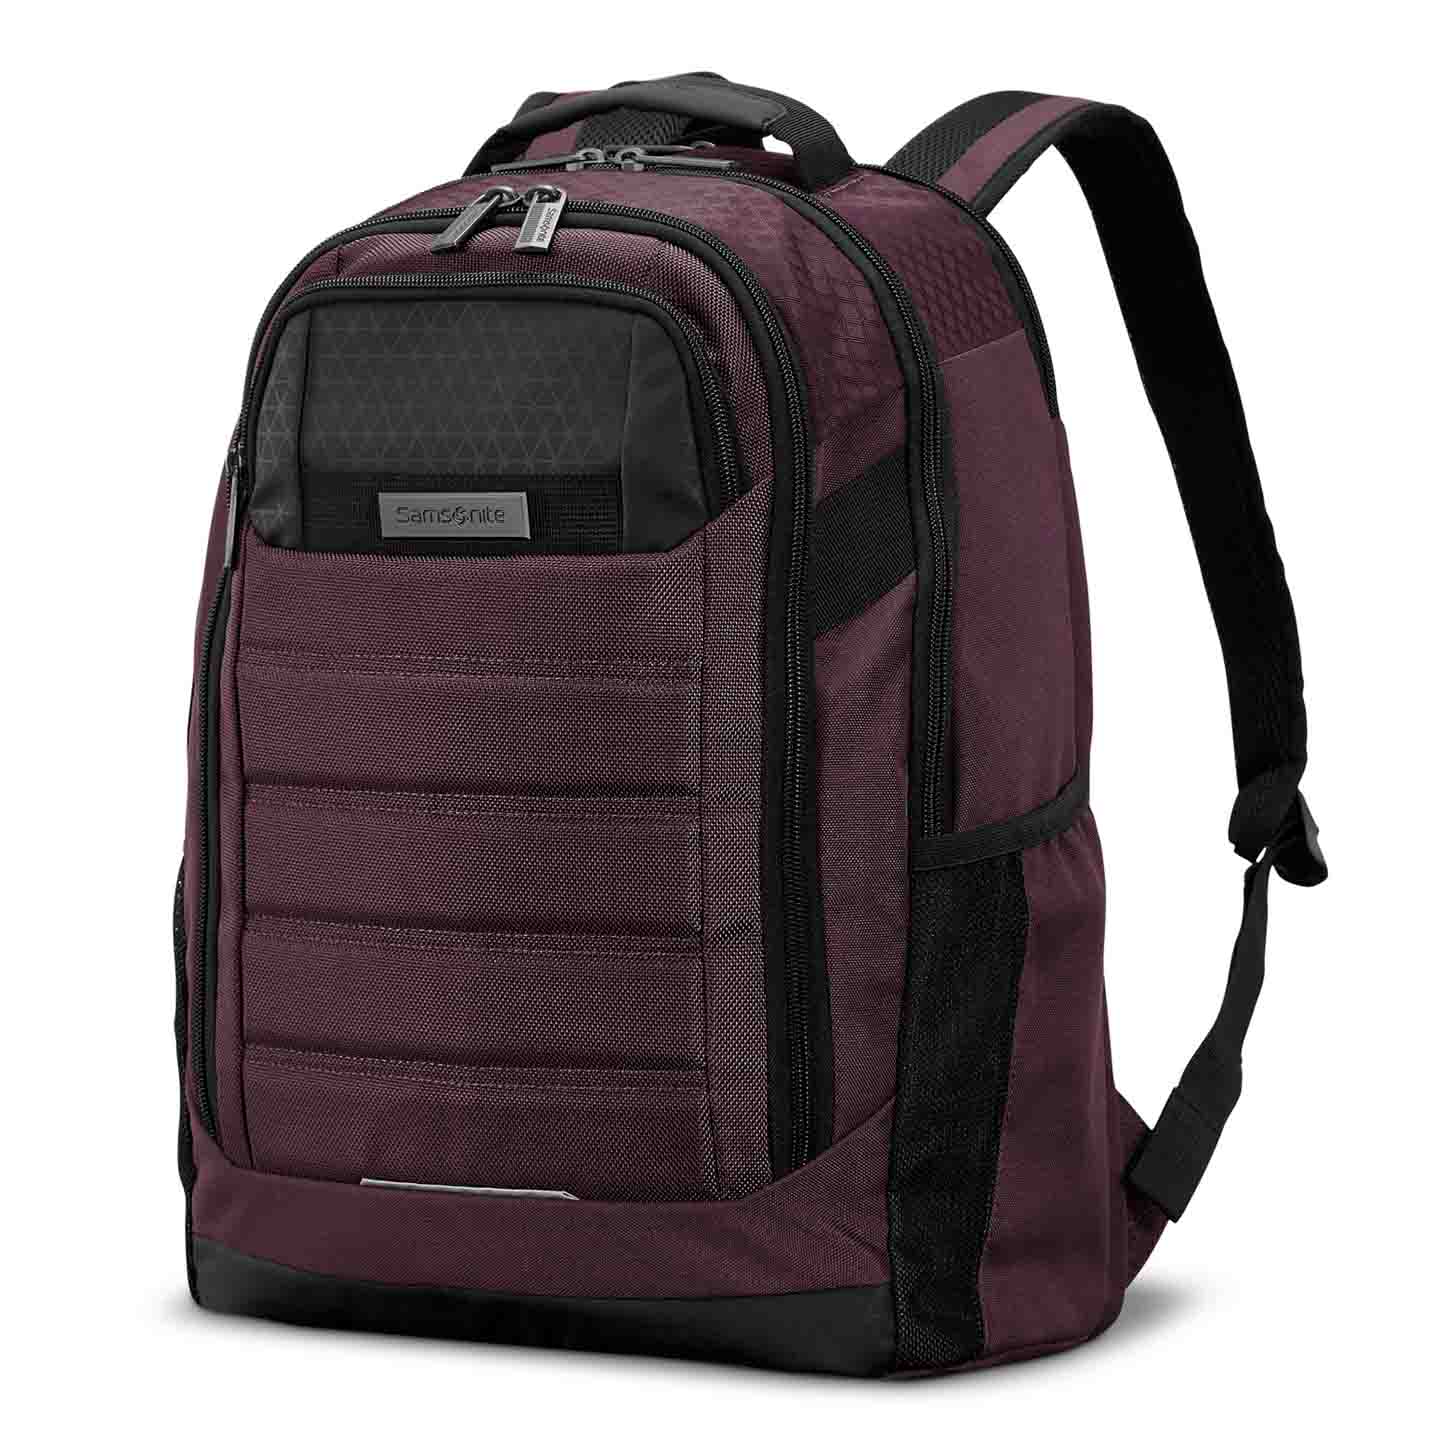 deep purple Carrier GSD Backpack with adjustable shoulder straps